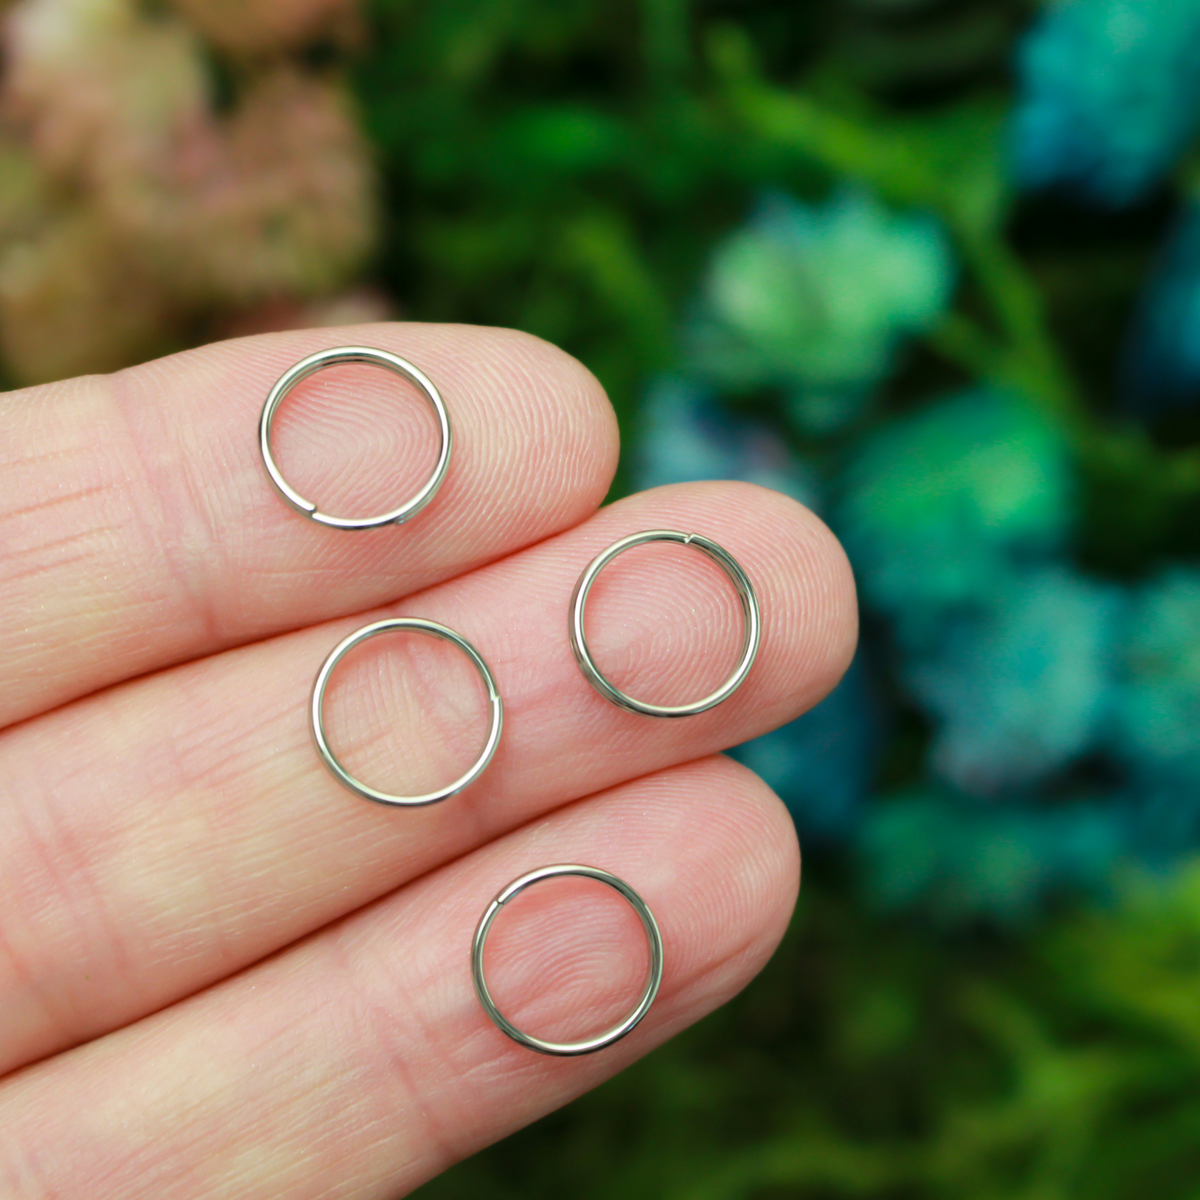 10mm Split Key Rings - Stainless Steel Double Loop Jump Ring, 100pcs